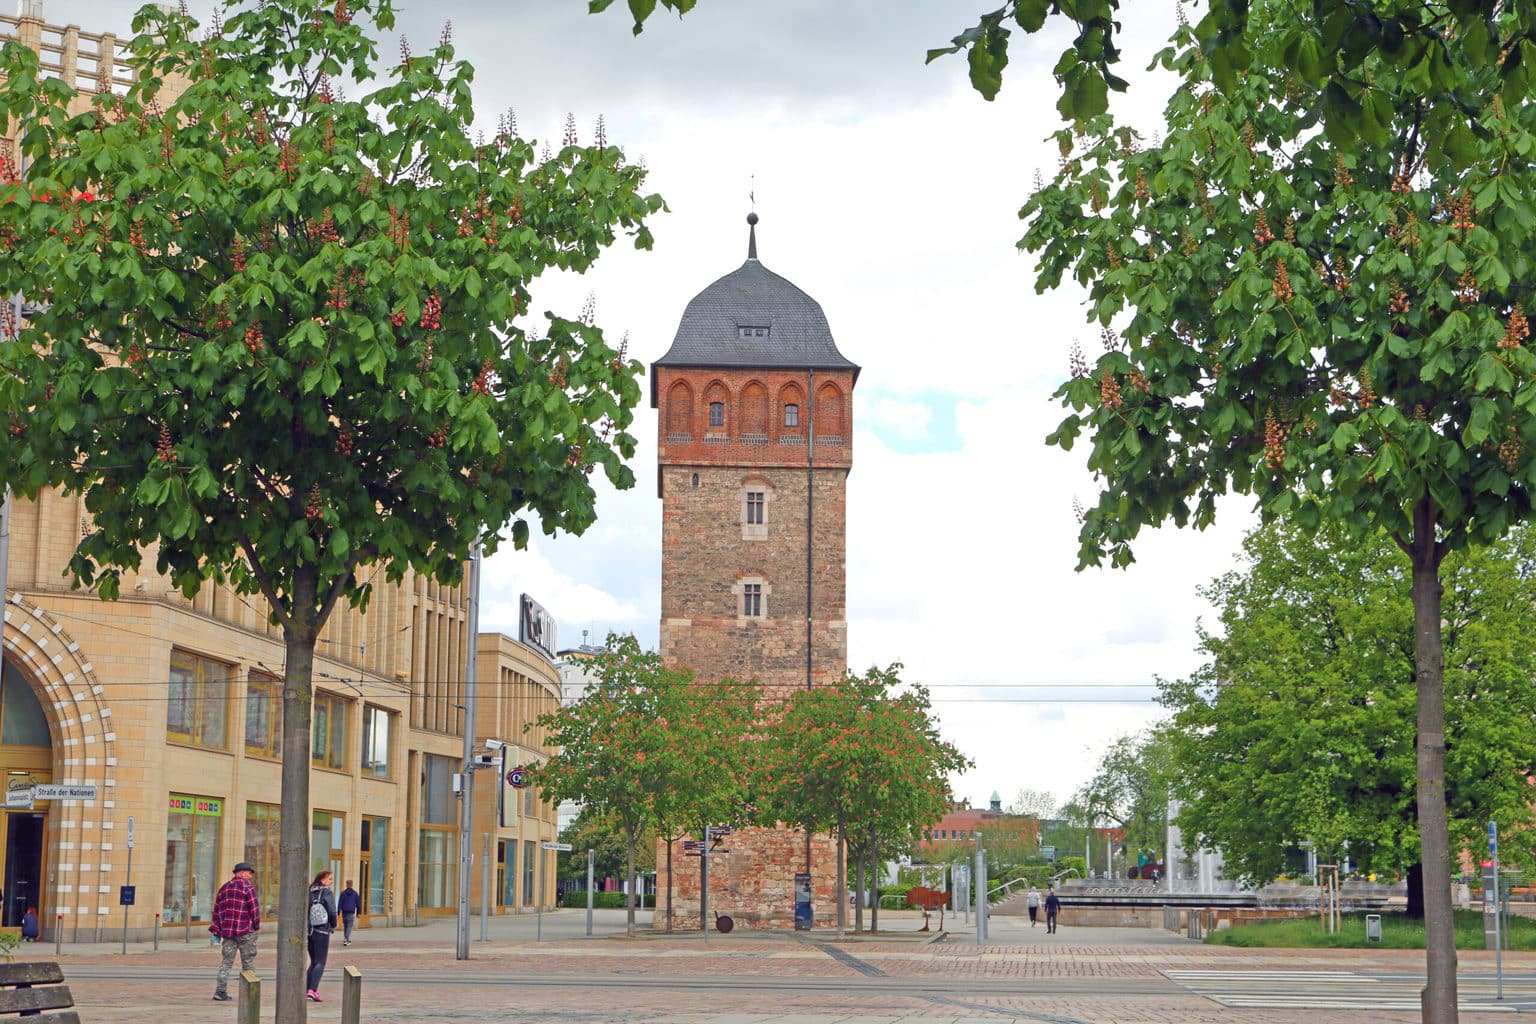 De rode toren in de Duitse stad Chemnitz